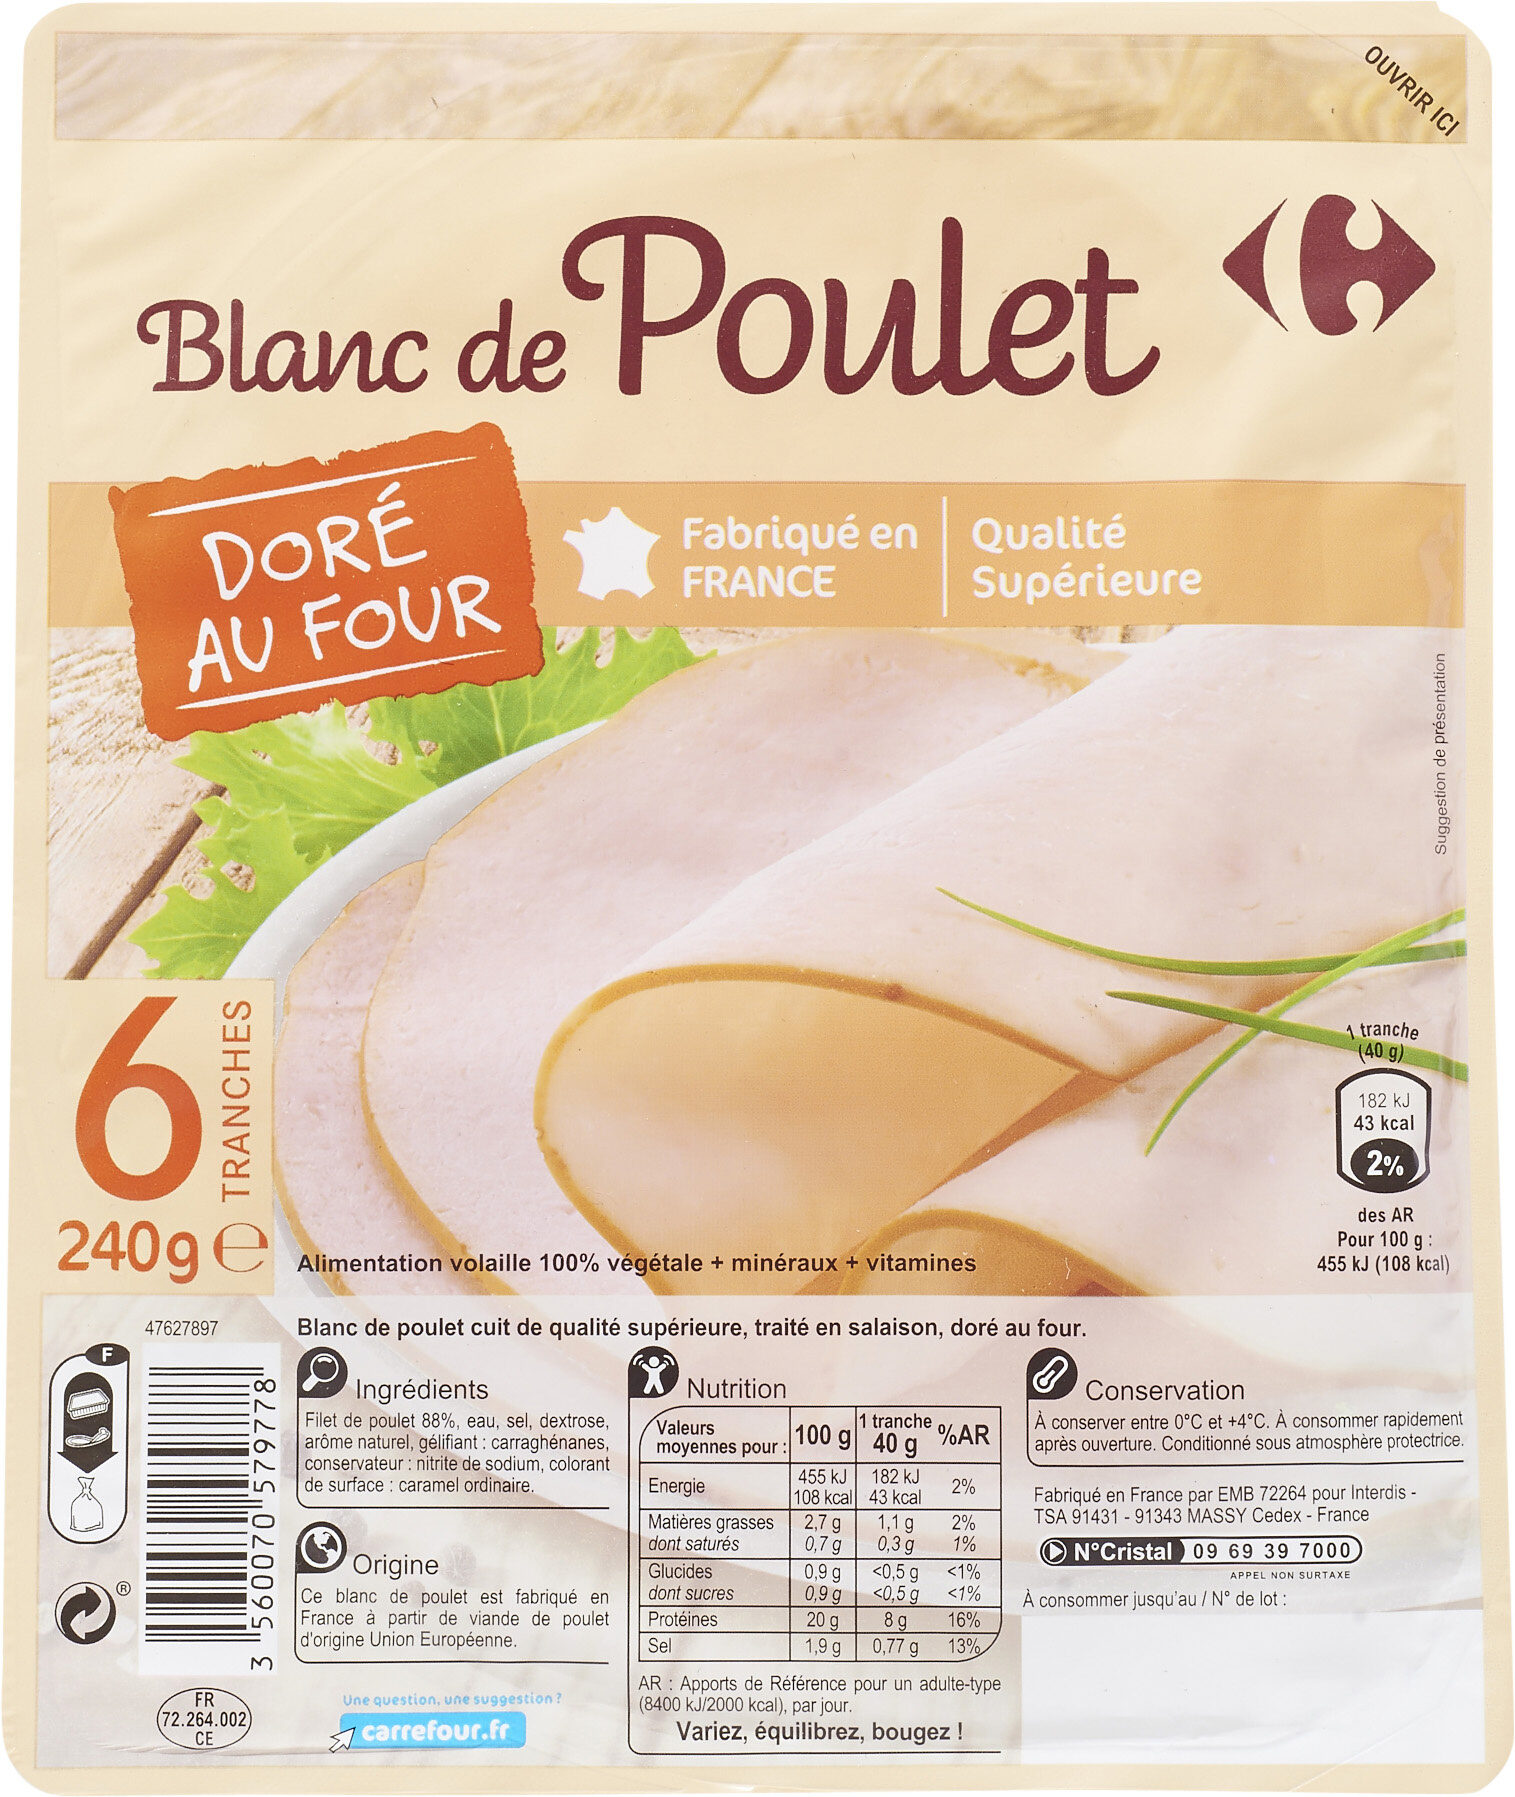 Blanc de poulet Doré au Four - Produkt - fr